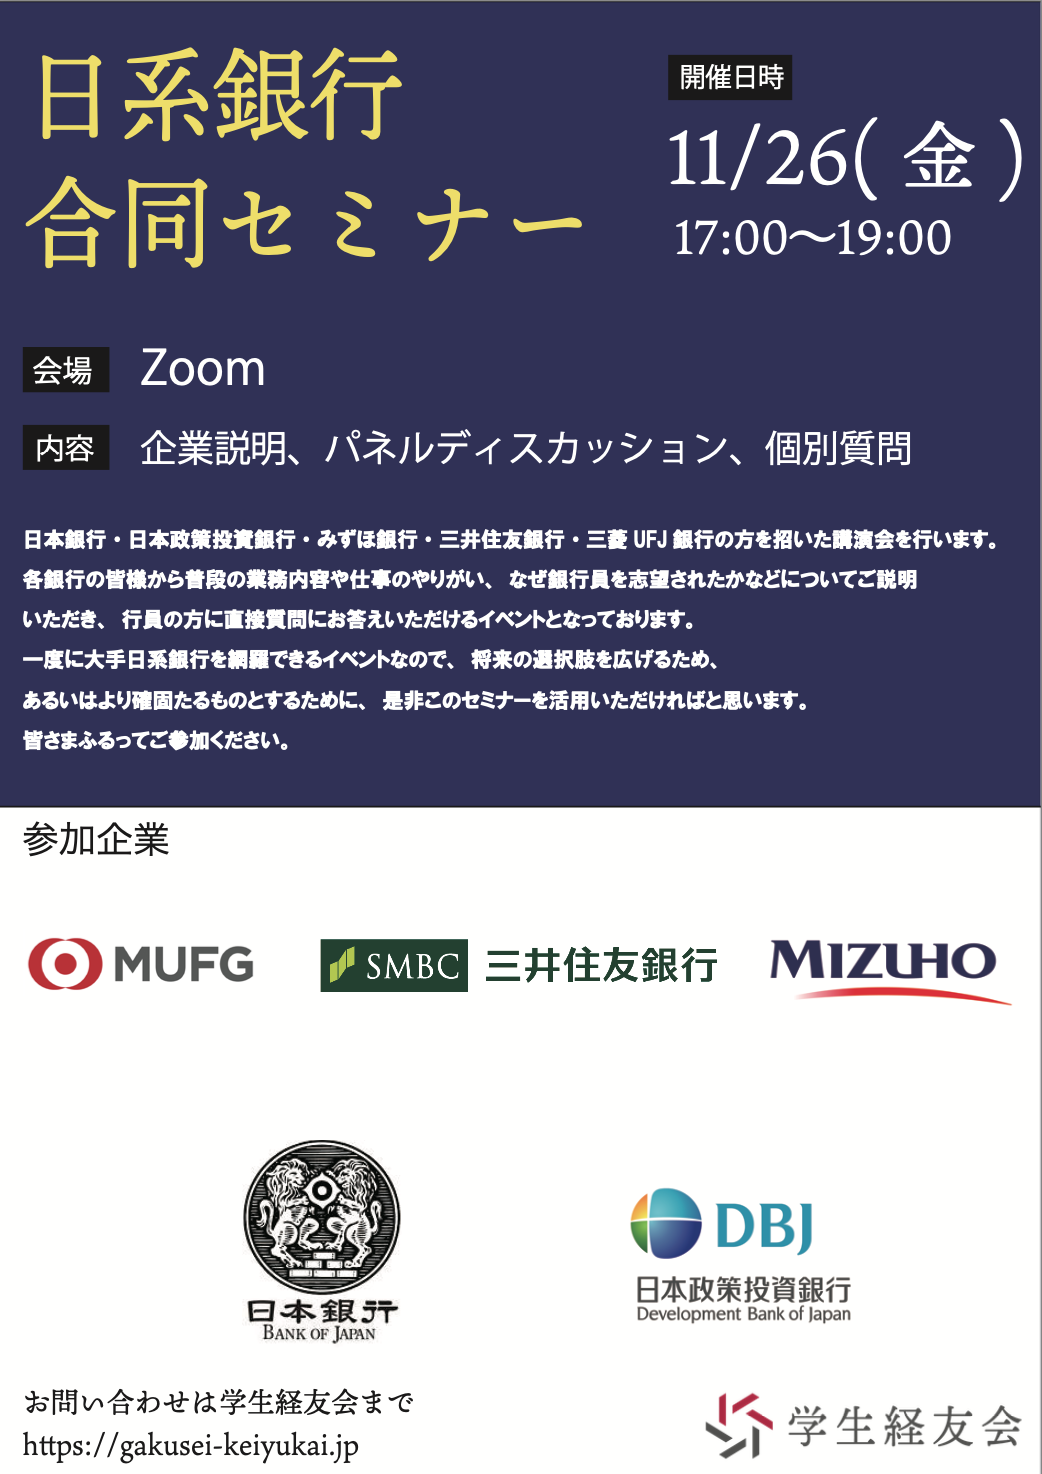 日系銀行合同セミナー2021